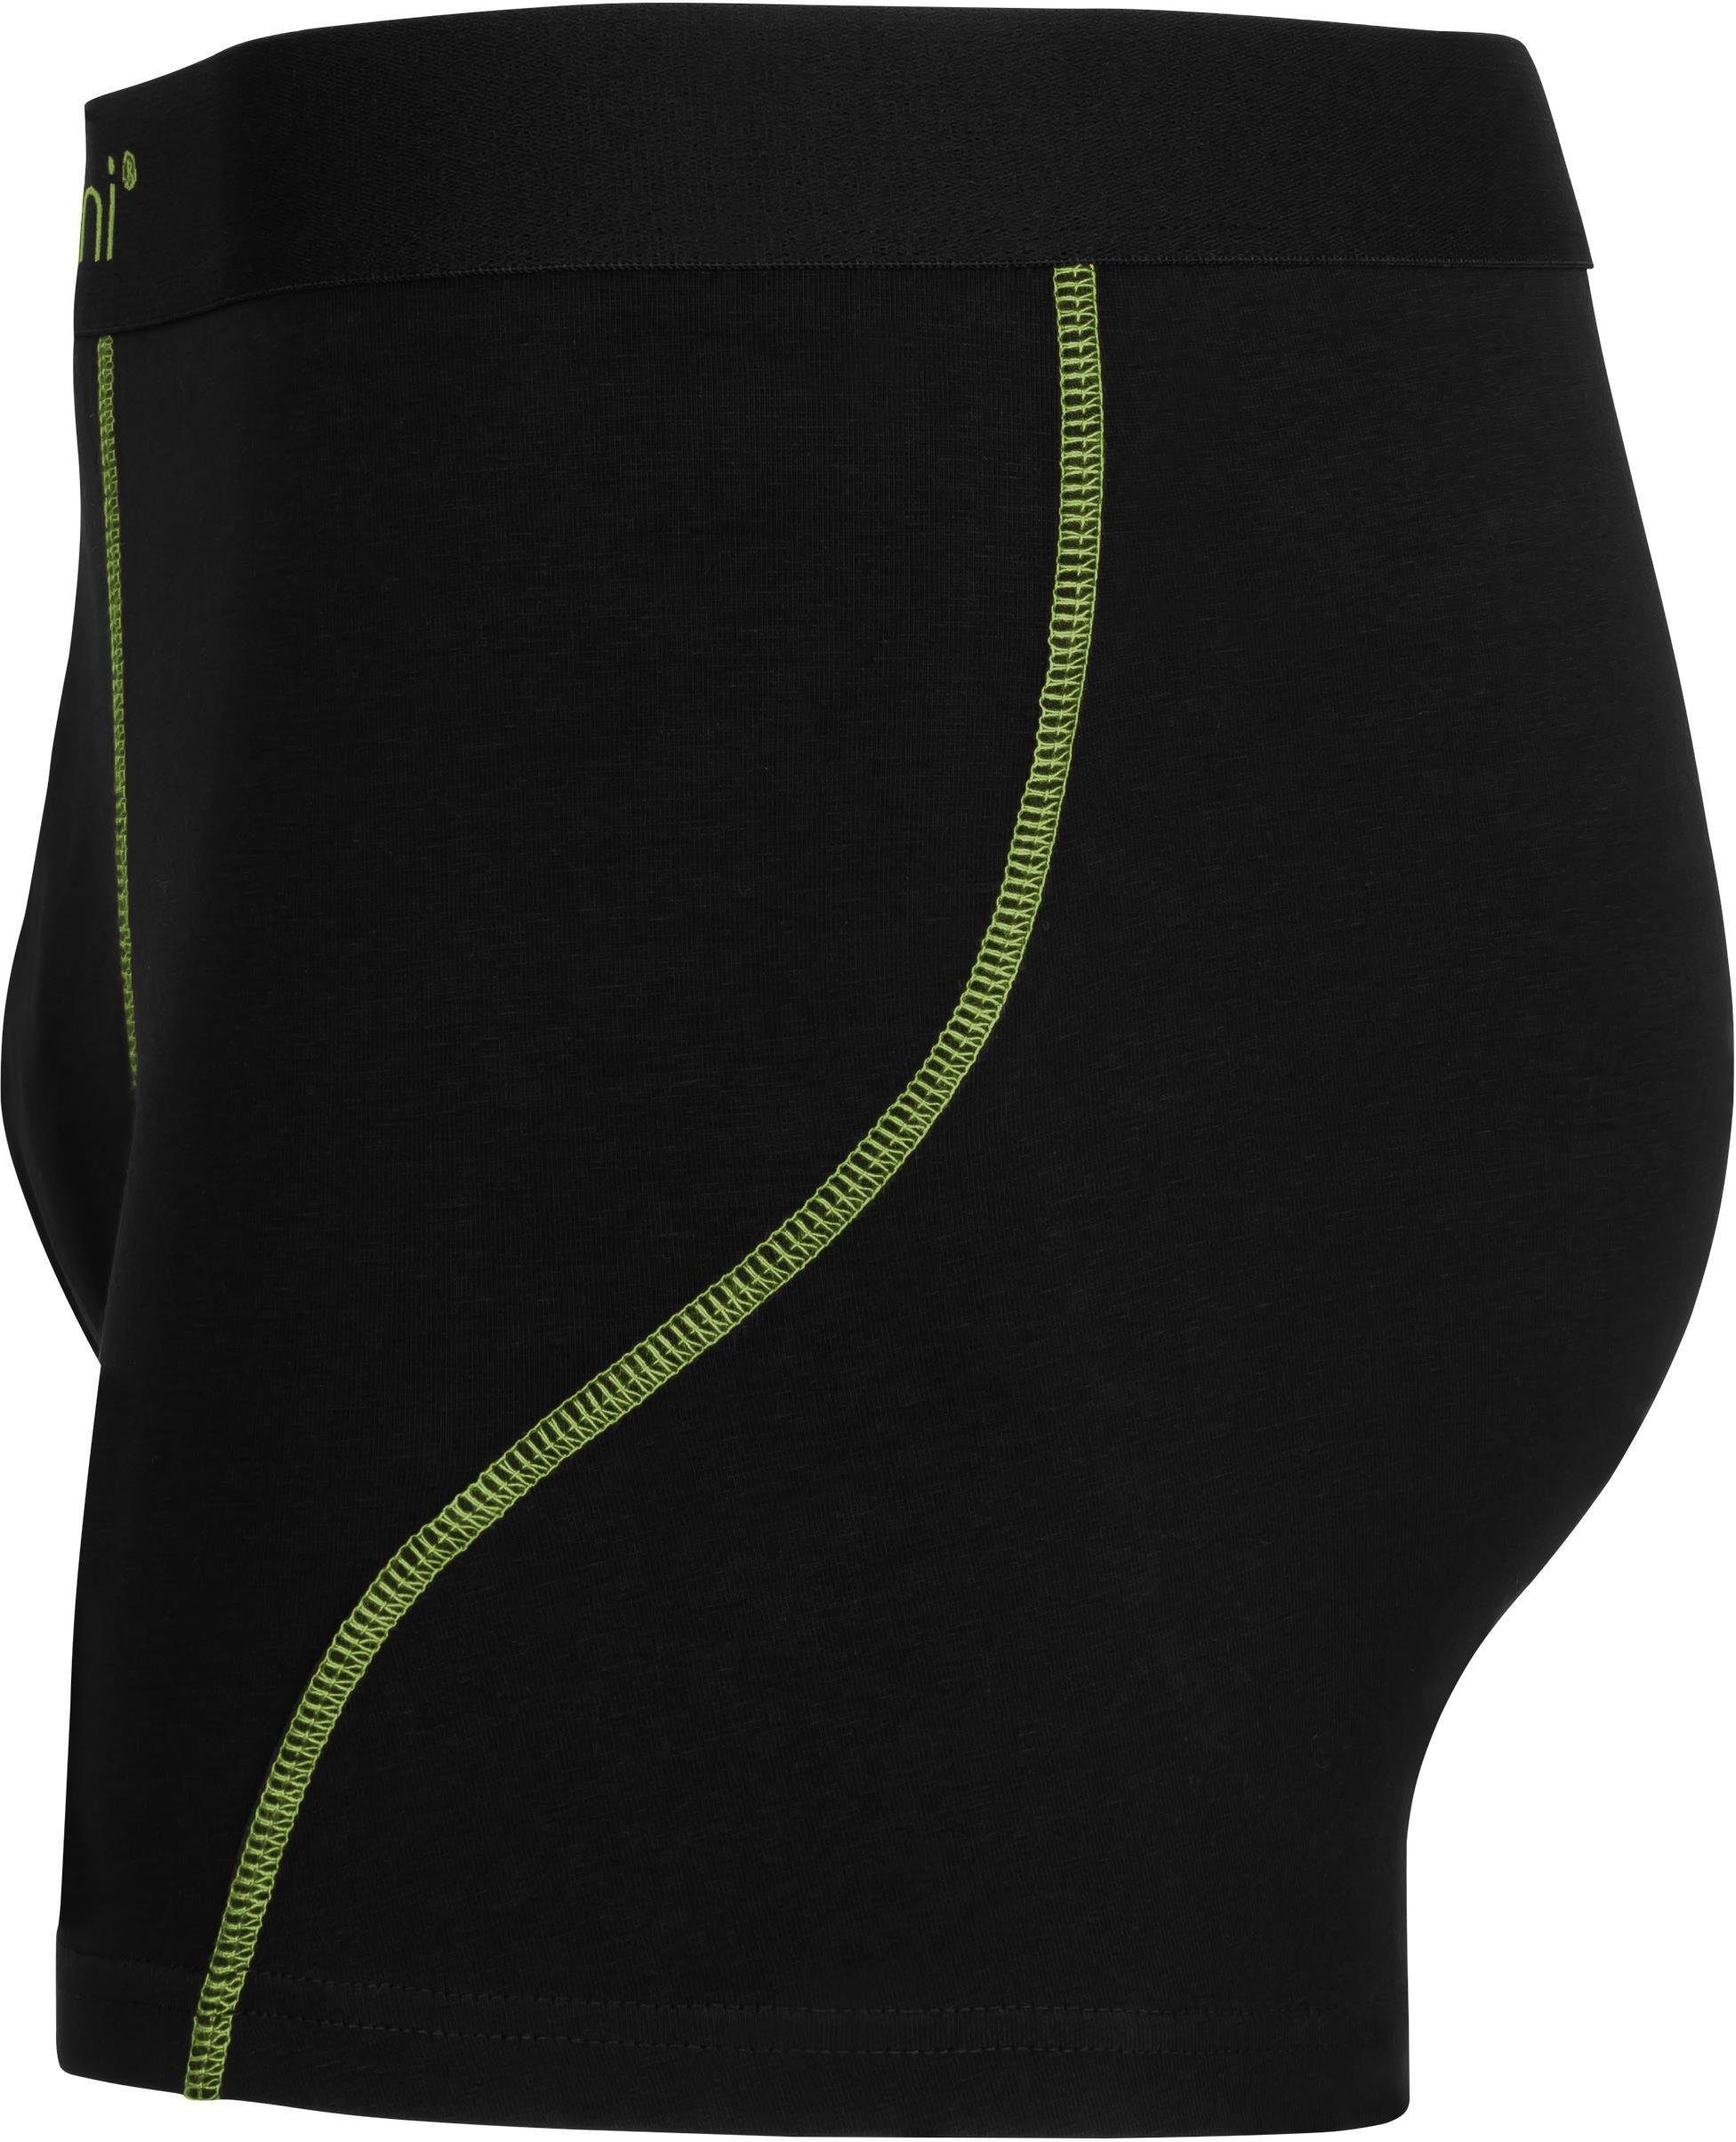 Unterhose für normani atmungsaktiver 6 Männer Herren Baumwoll-Boxershorts Boxershorts Baumwolle aus Grün